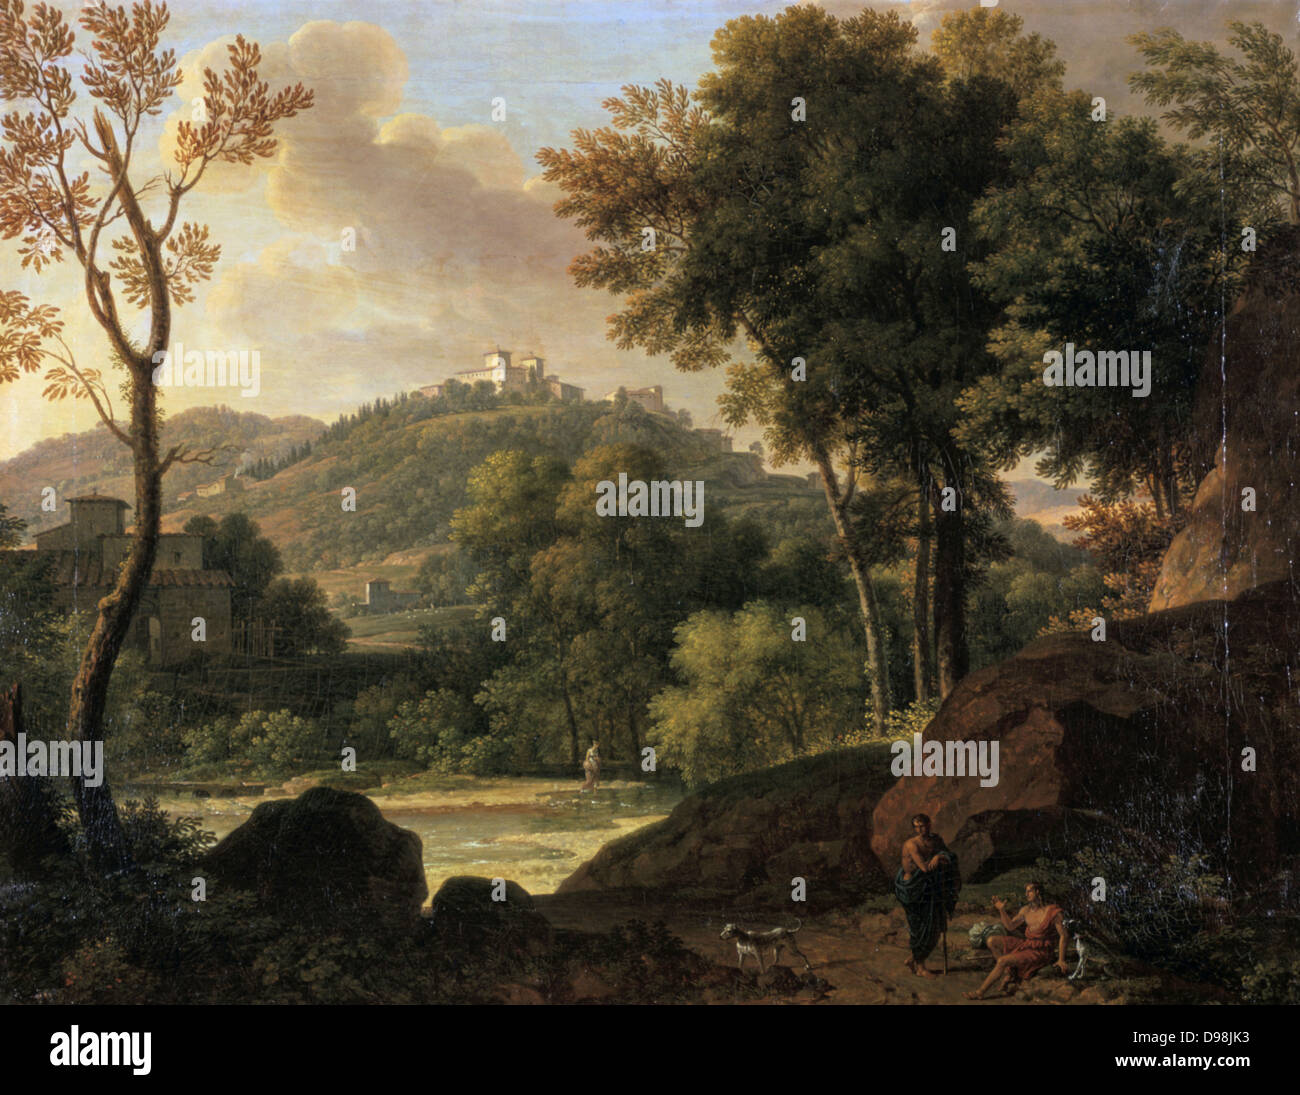 Dintorni di Firenze", dipinto da Francois Xavier, il Barone Fabre (1766-1837), artista francese. Ruscello paesaggio boscoso attraverso il paesaggio con le colline e le ville. Le figure con i cani in primo piano roccioso. Foto Stock